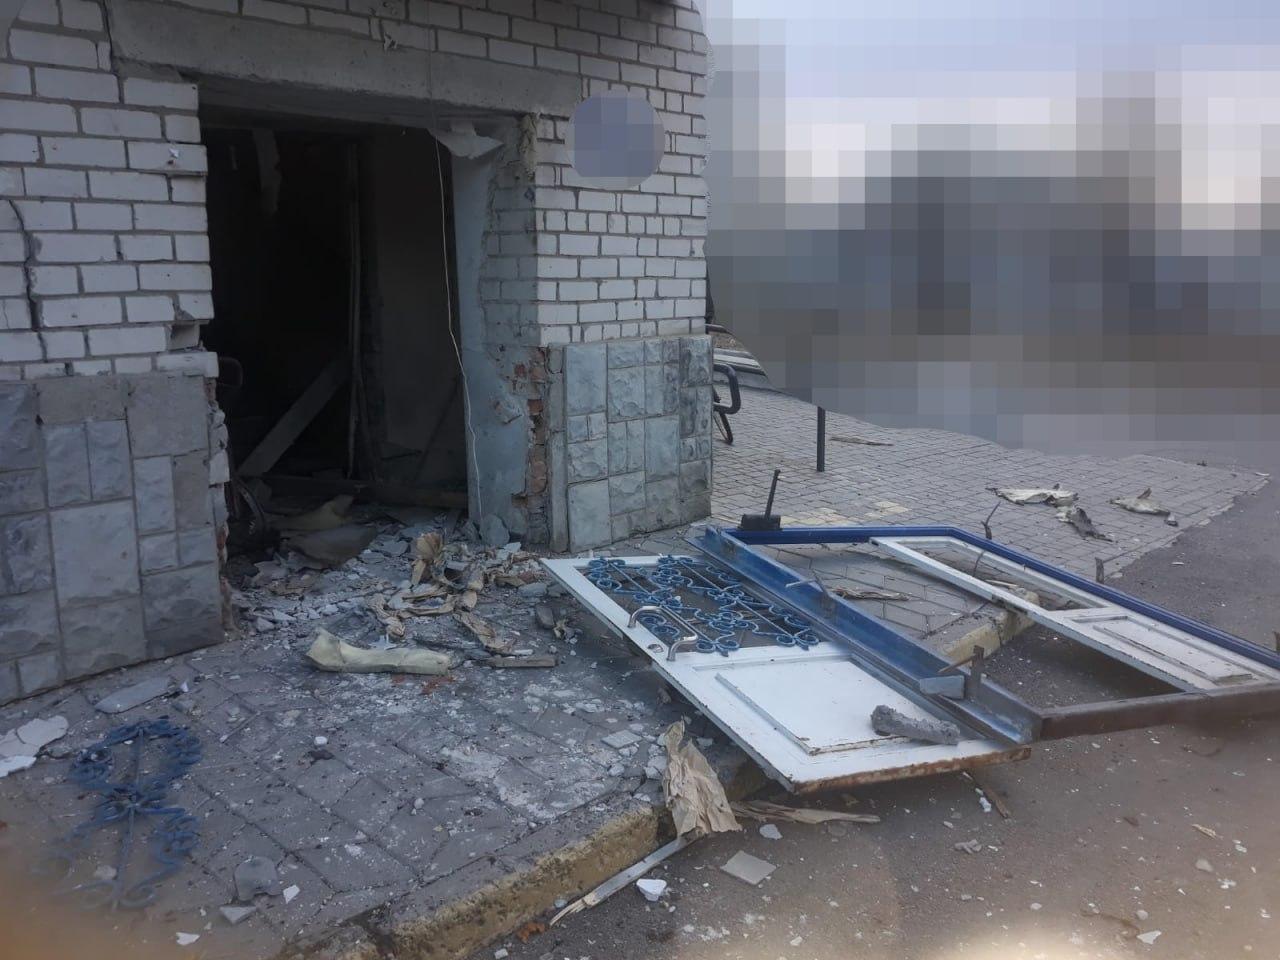 Війська РФ атакували з безпілотника лікарню в Бериславі, є поранений